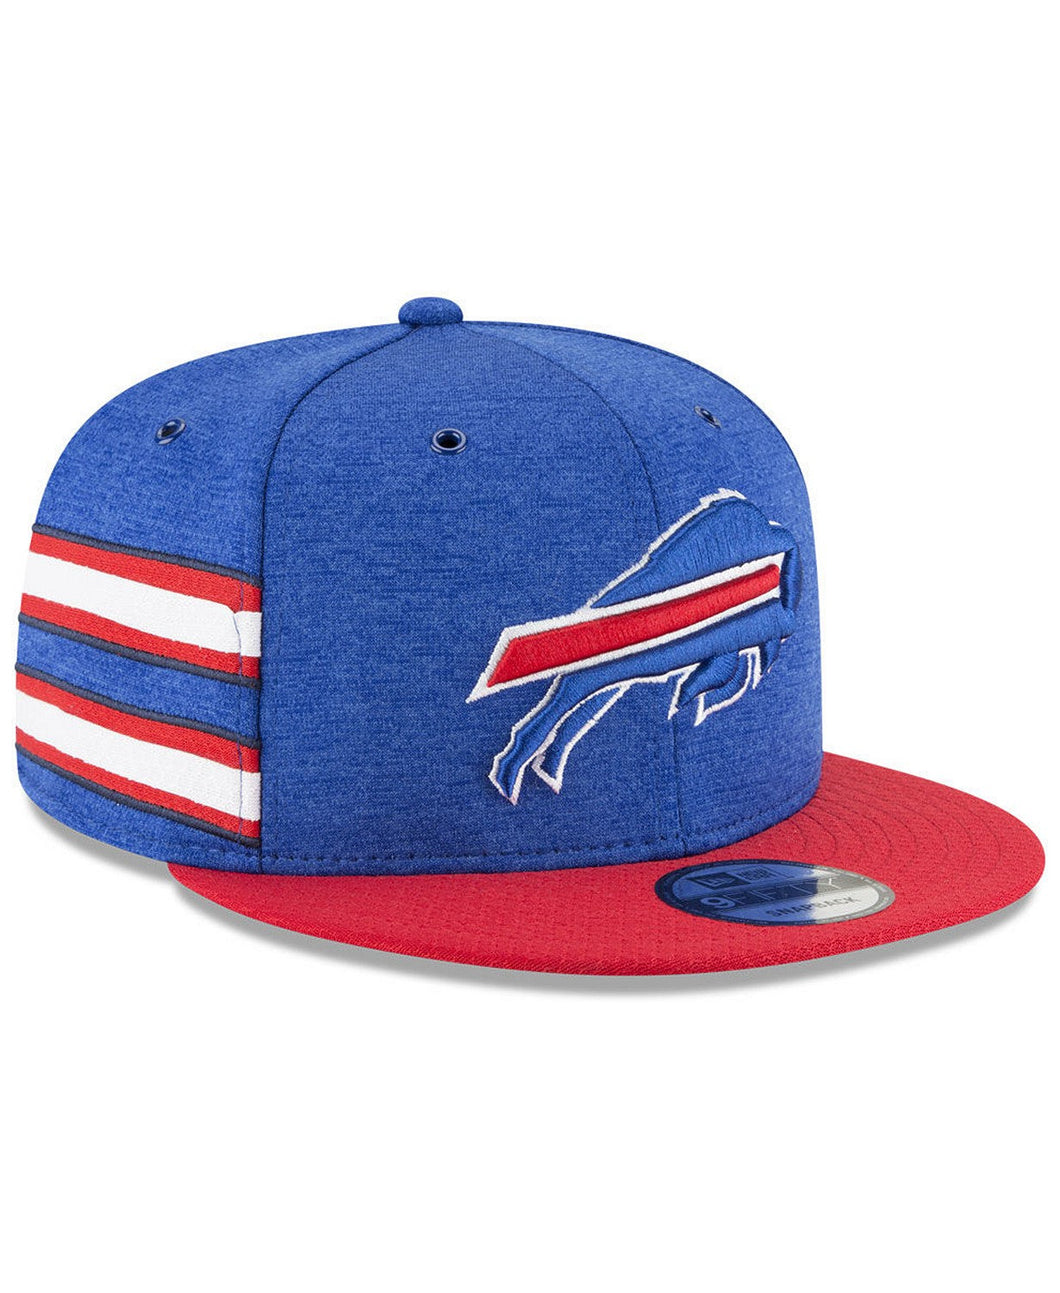 Buffalo Bills New Era NFL 9FIFTY 950 Snapback 2018 Sideline Cap Hat Royal Blue Crown Red Visor Team Color Logo